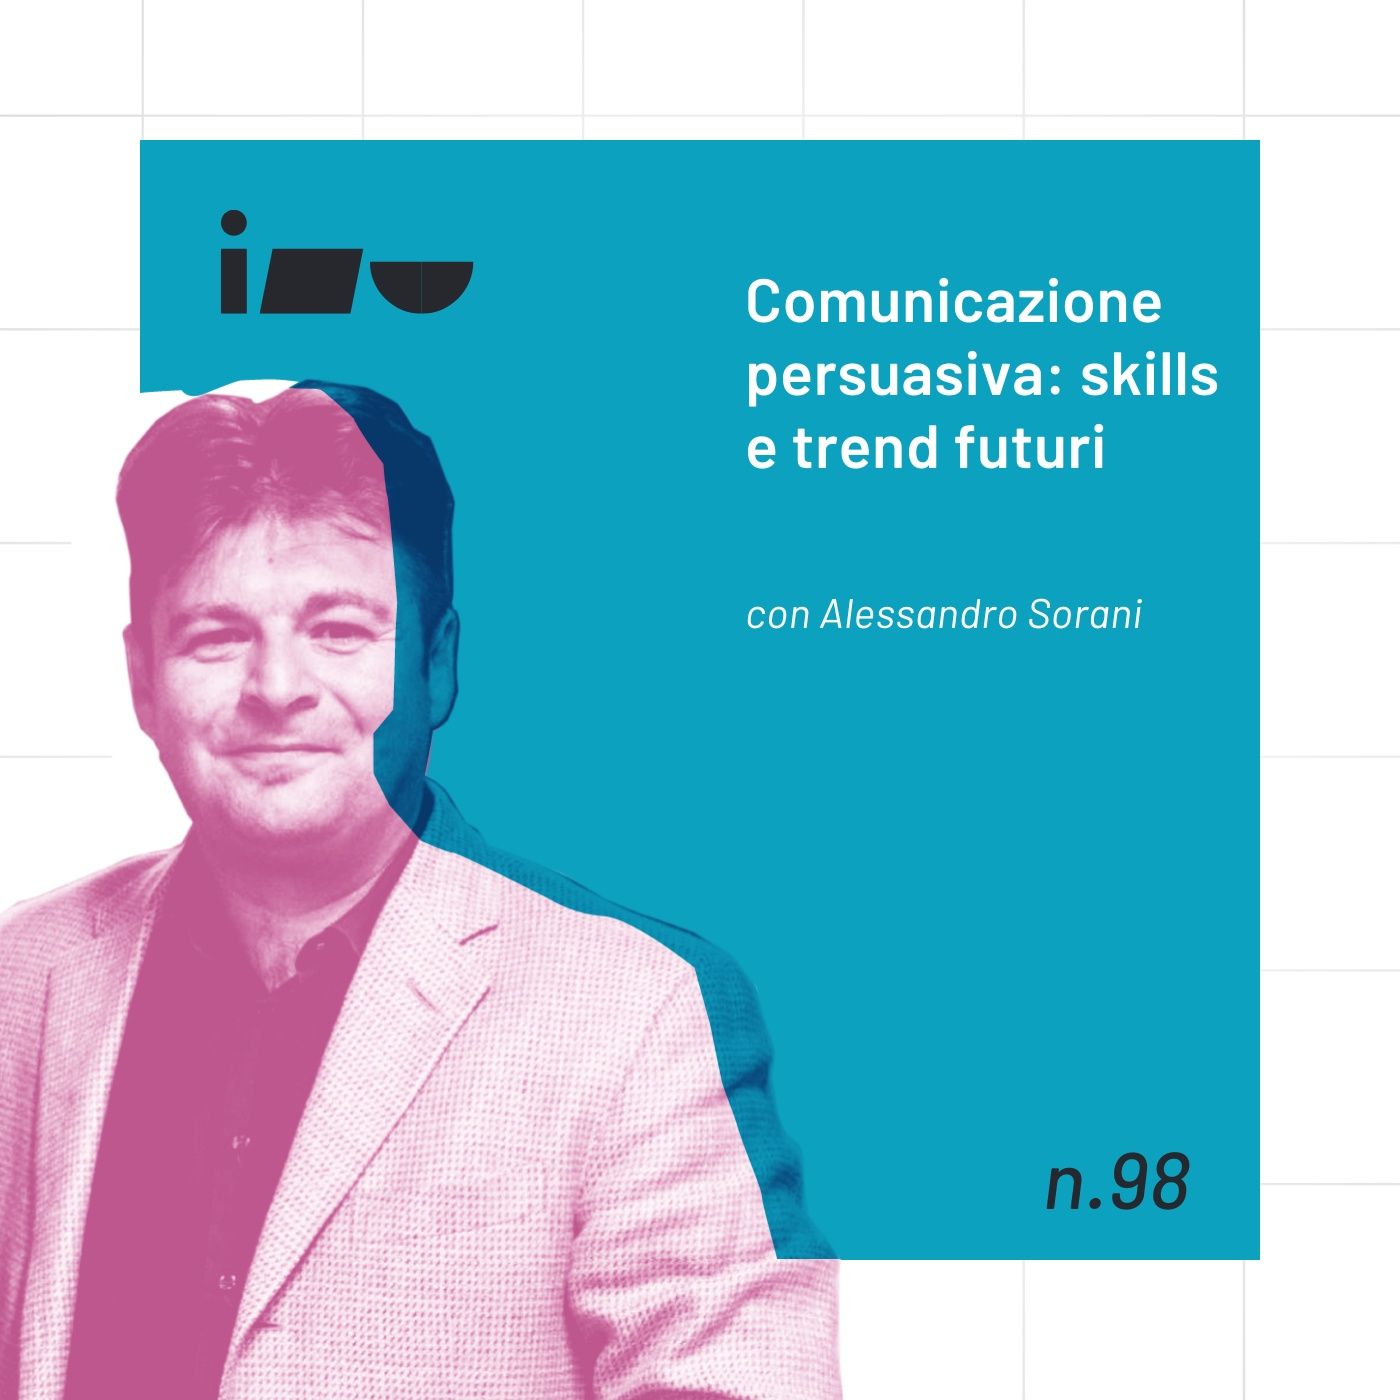 Comunicazione persuasiva: skills e trend futuri con Alessandro Sorani